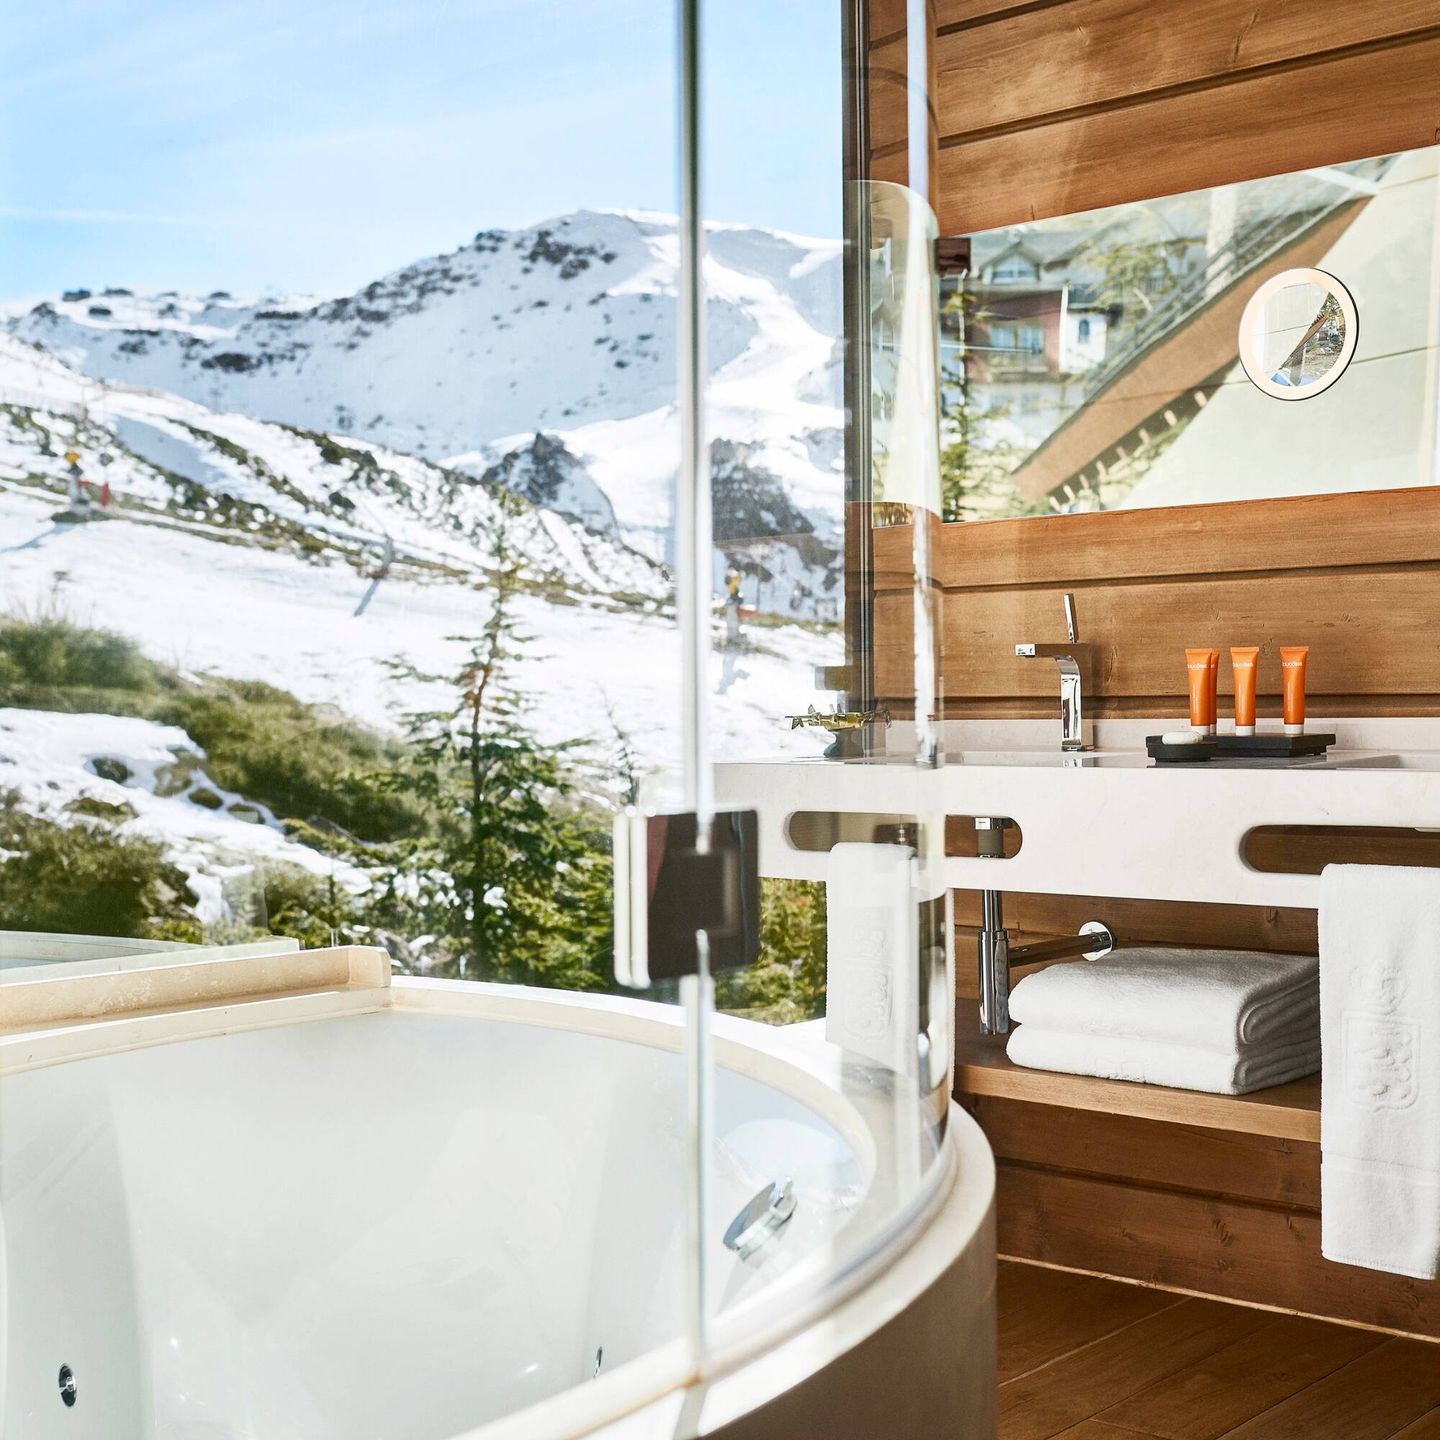 The Lodge ofrece placeres tan inusuales como tomarse un baño encima de las pistas de esquí. (Cortesía)